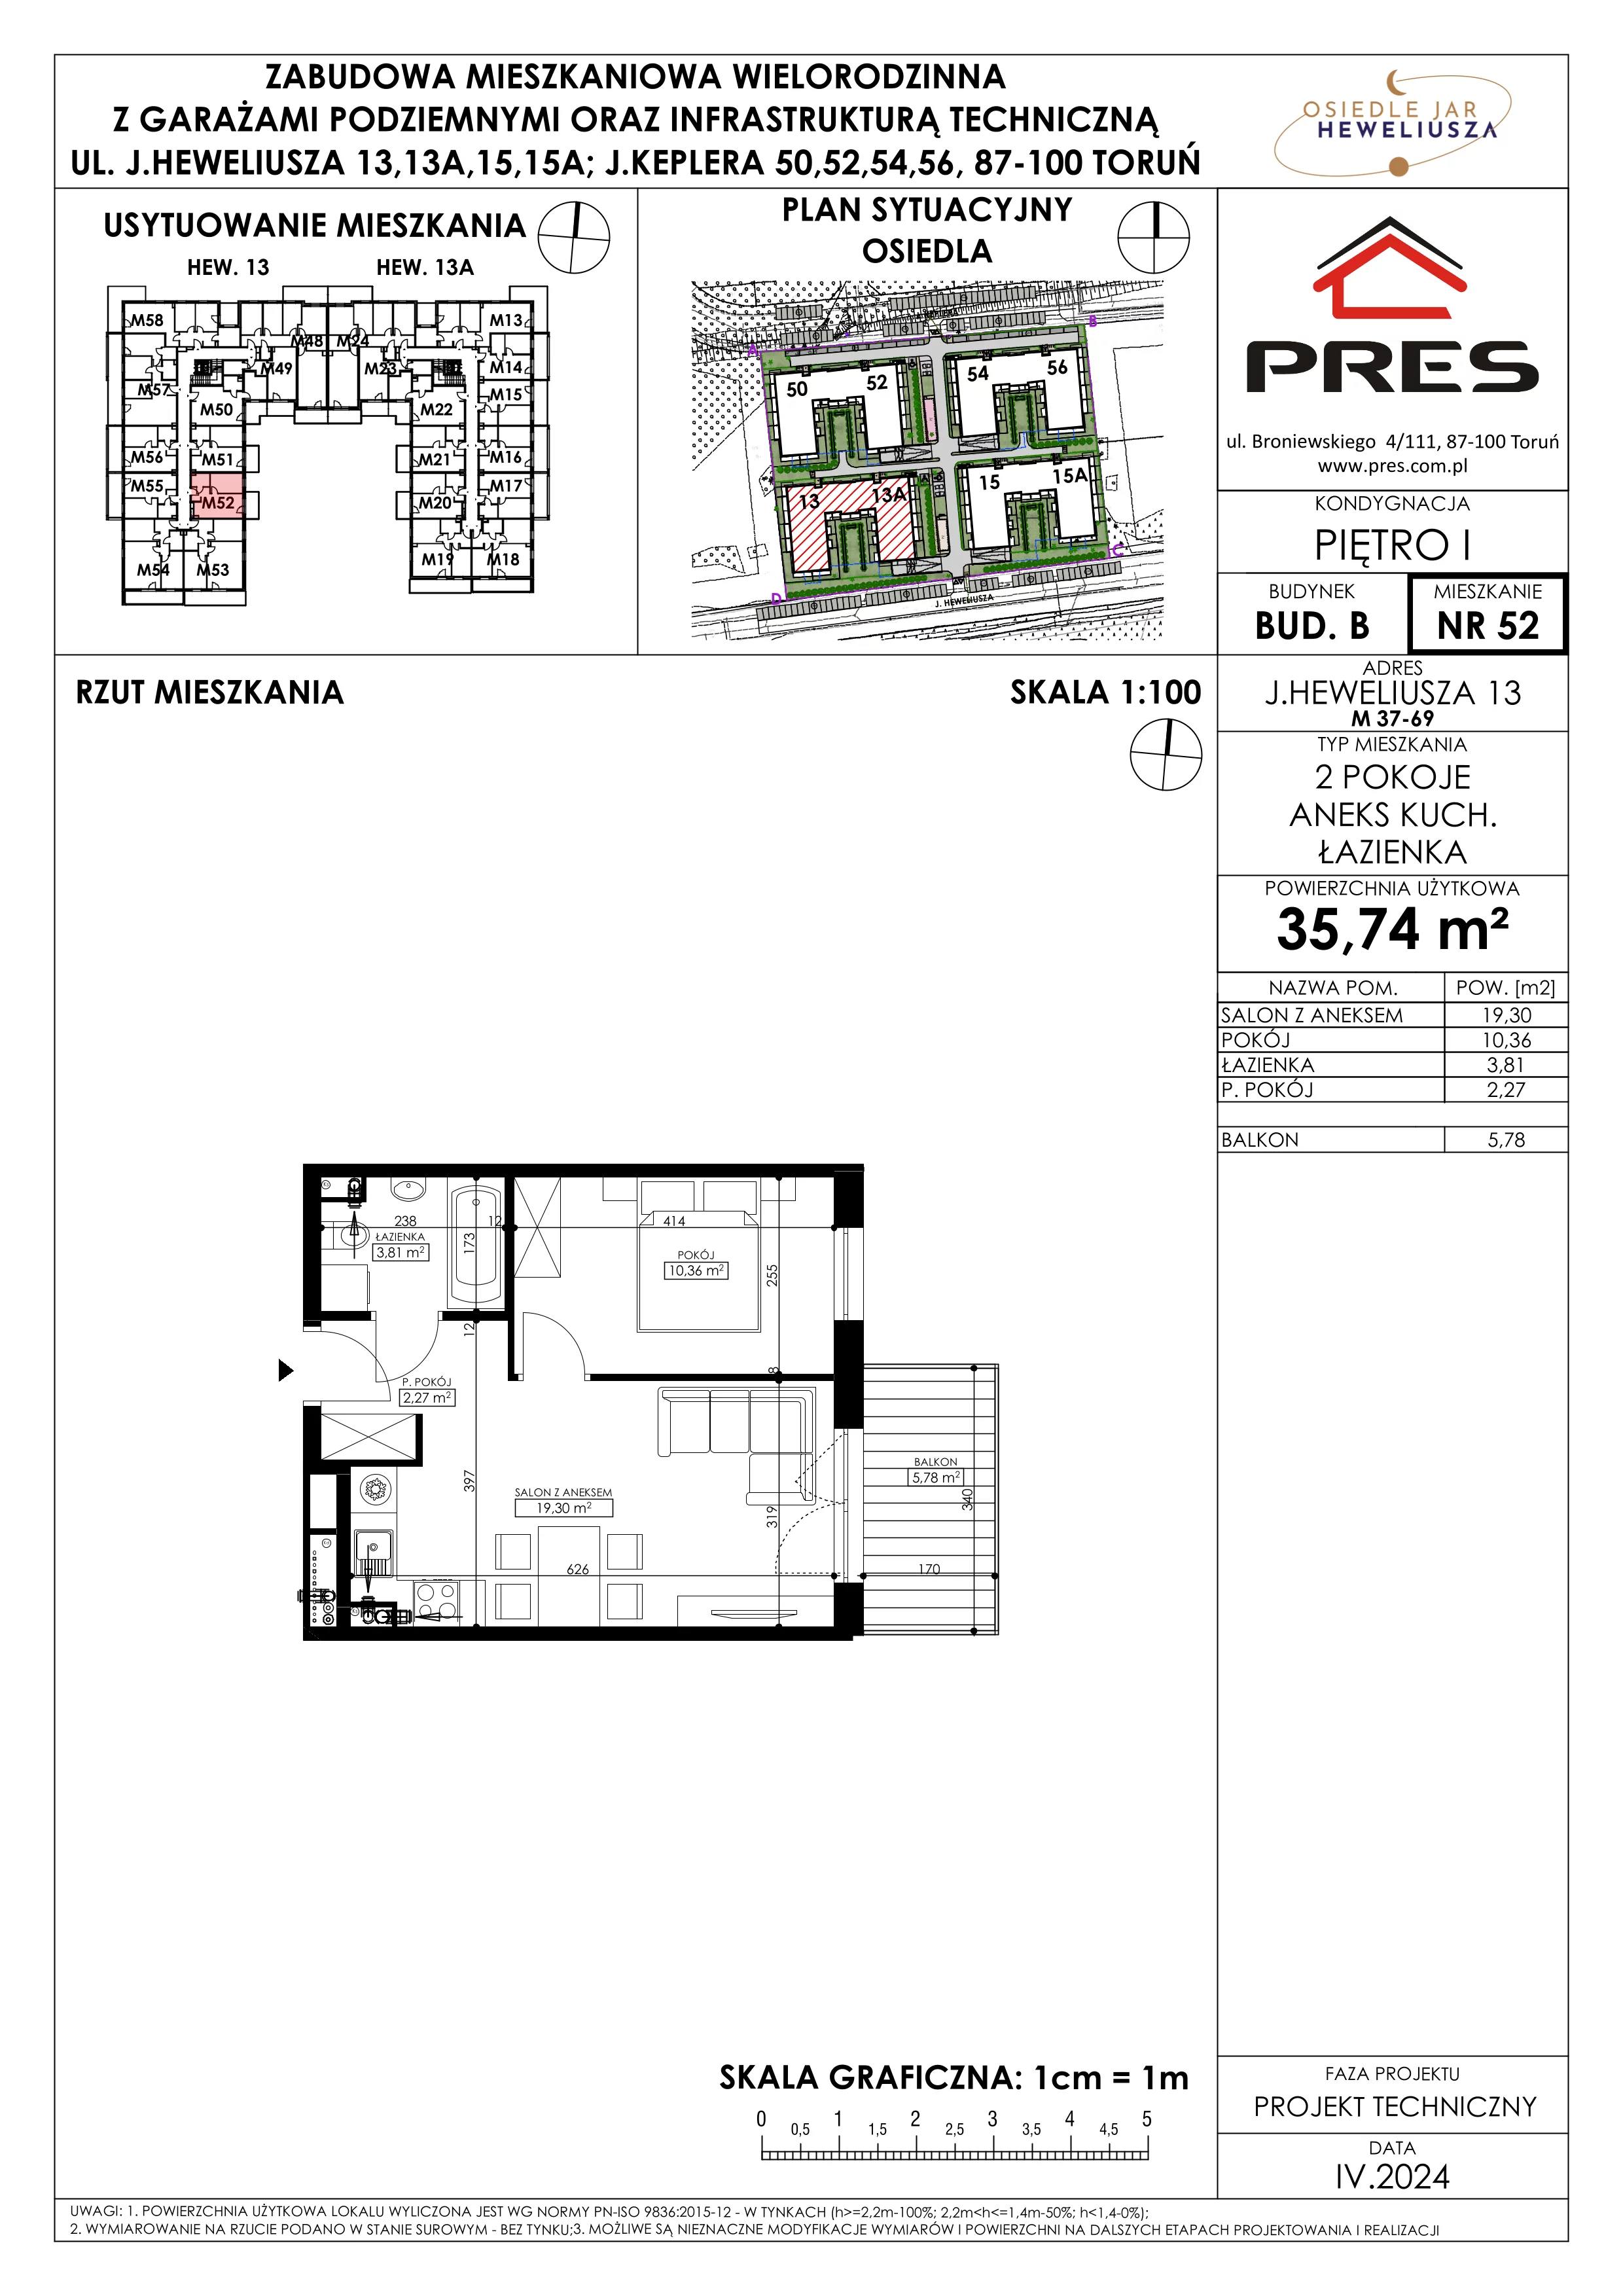 Mieszkanie 35,74 m², piętro 1, oferta nr 52, Osiedle JAR Heweliusza - Etap II, Toruń, Wrzosy, JAR, ul. Heweliusza 13-15A